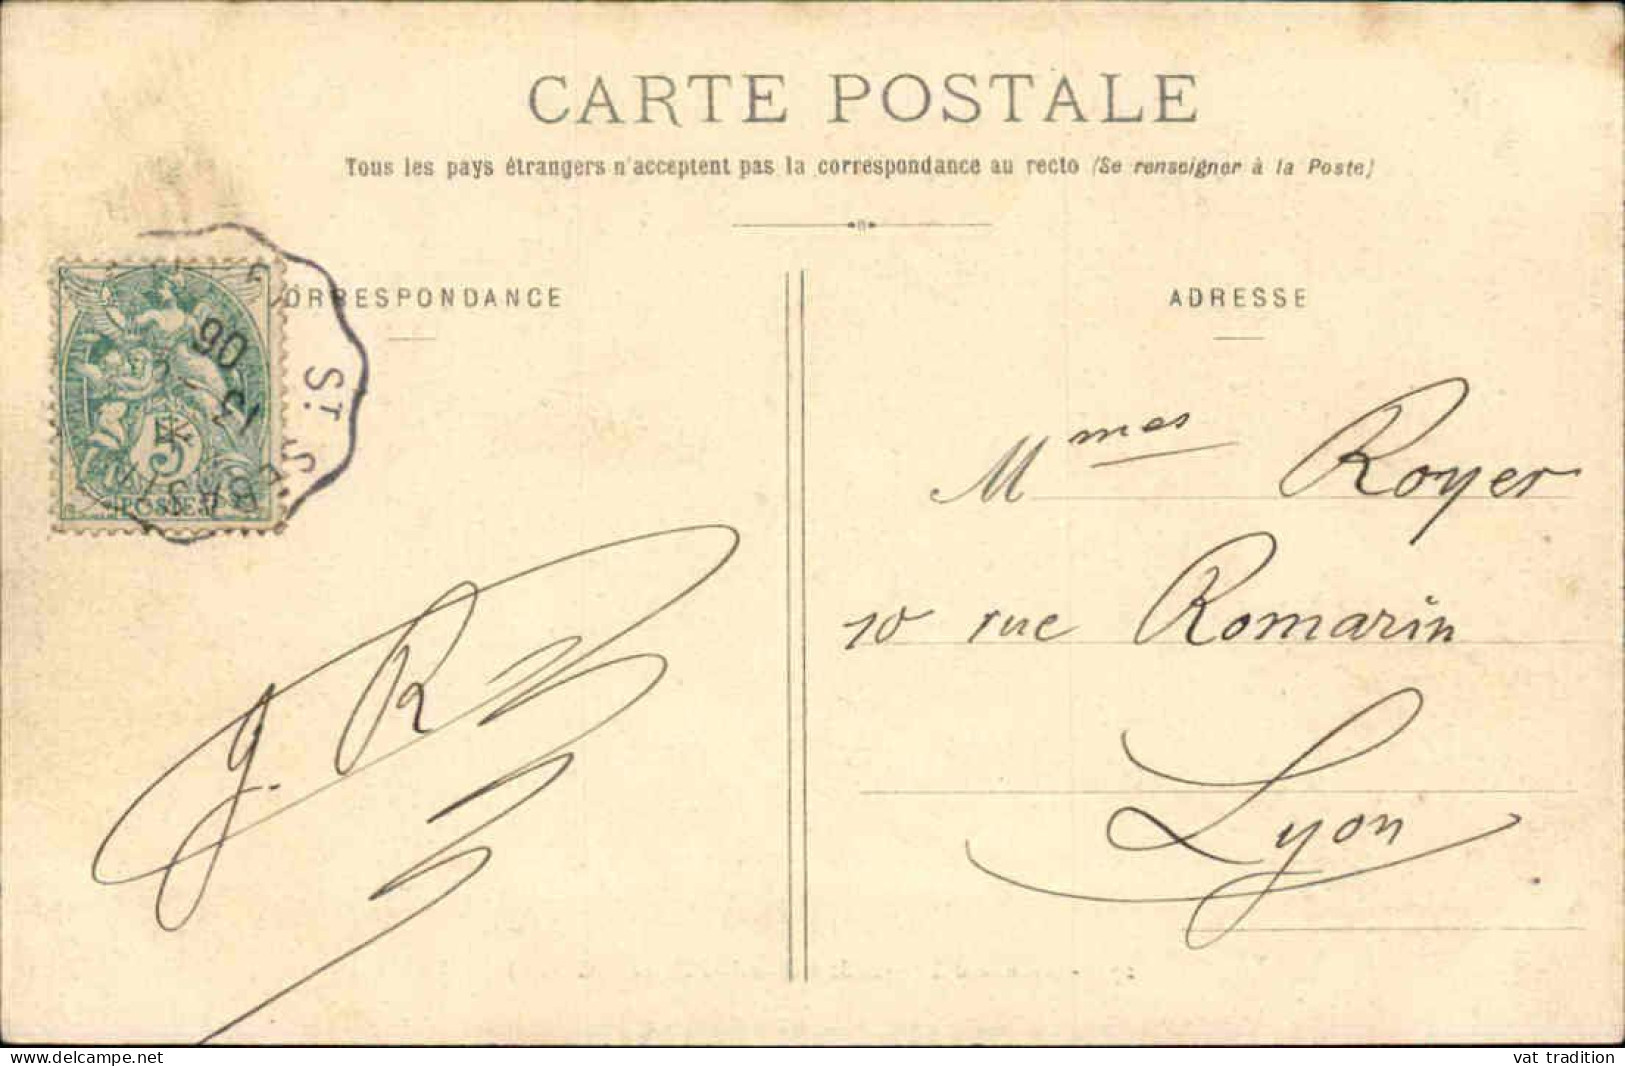 FRANCE - Carte Postale - Dun Le Paleteau - Avenue D'Aigurande - L 152135 - Dun Le Palestel